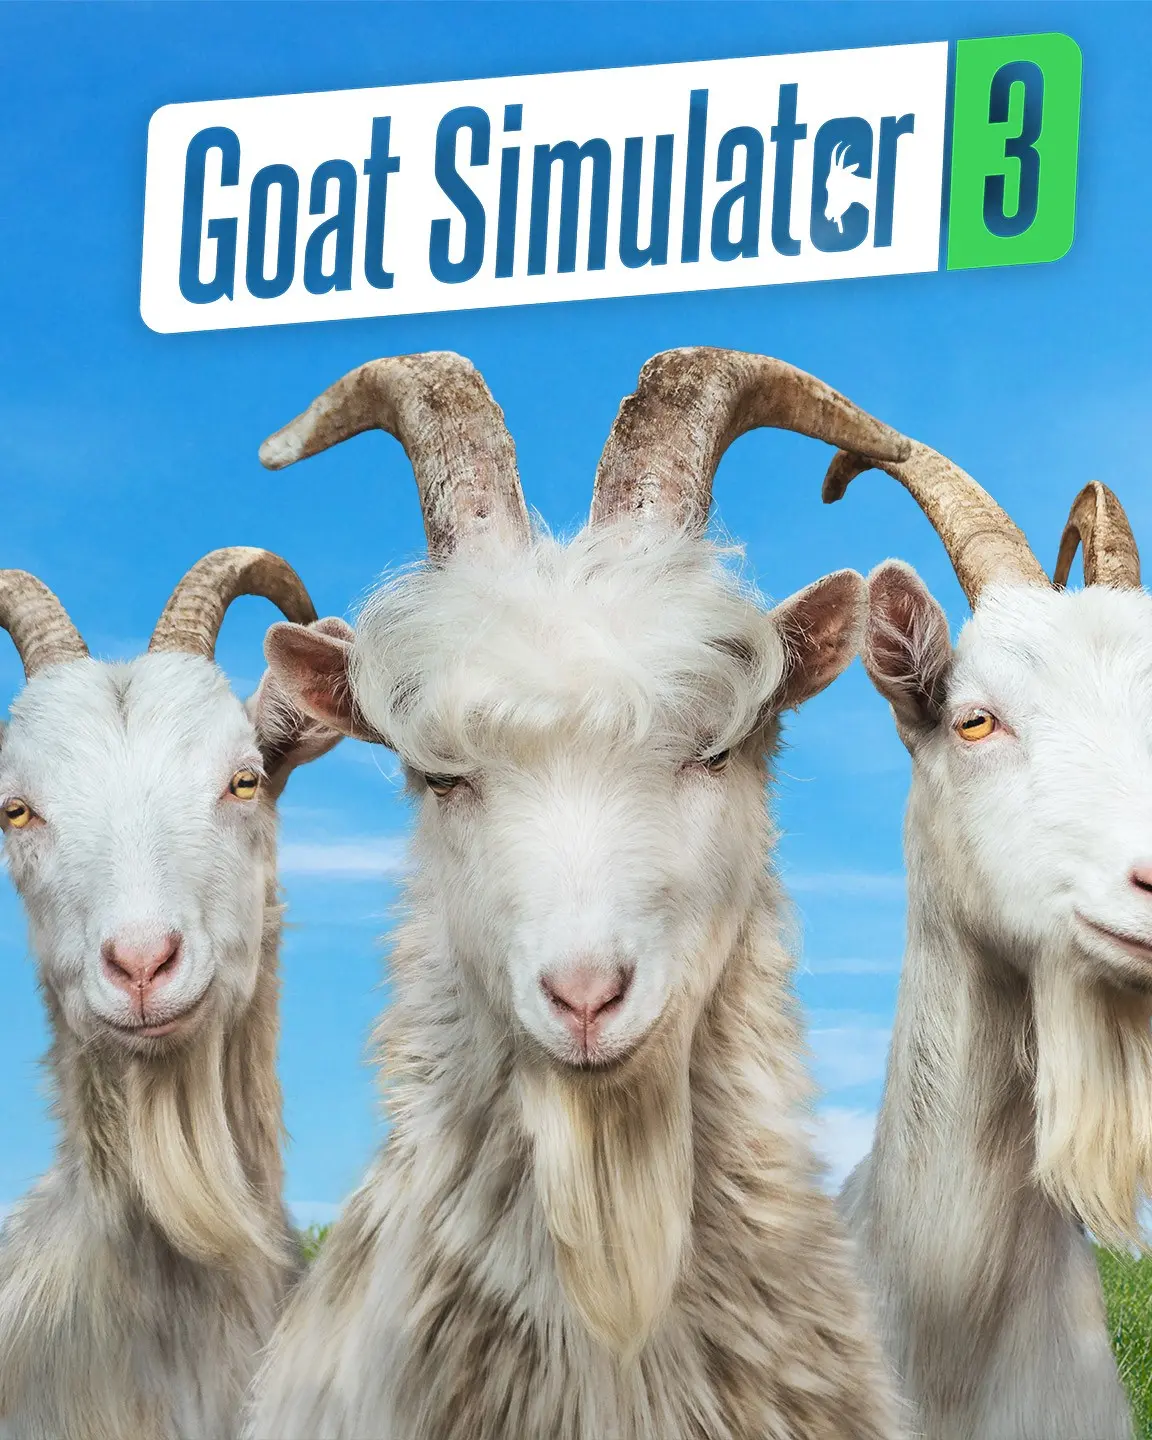 Goat Simulator 3 (PC) - Epic Games - Digital Code